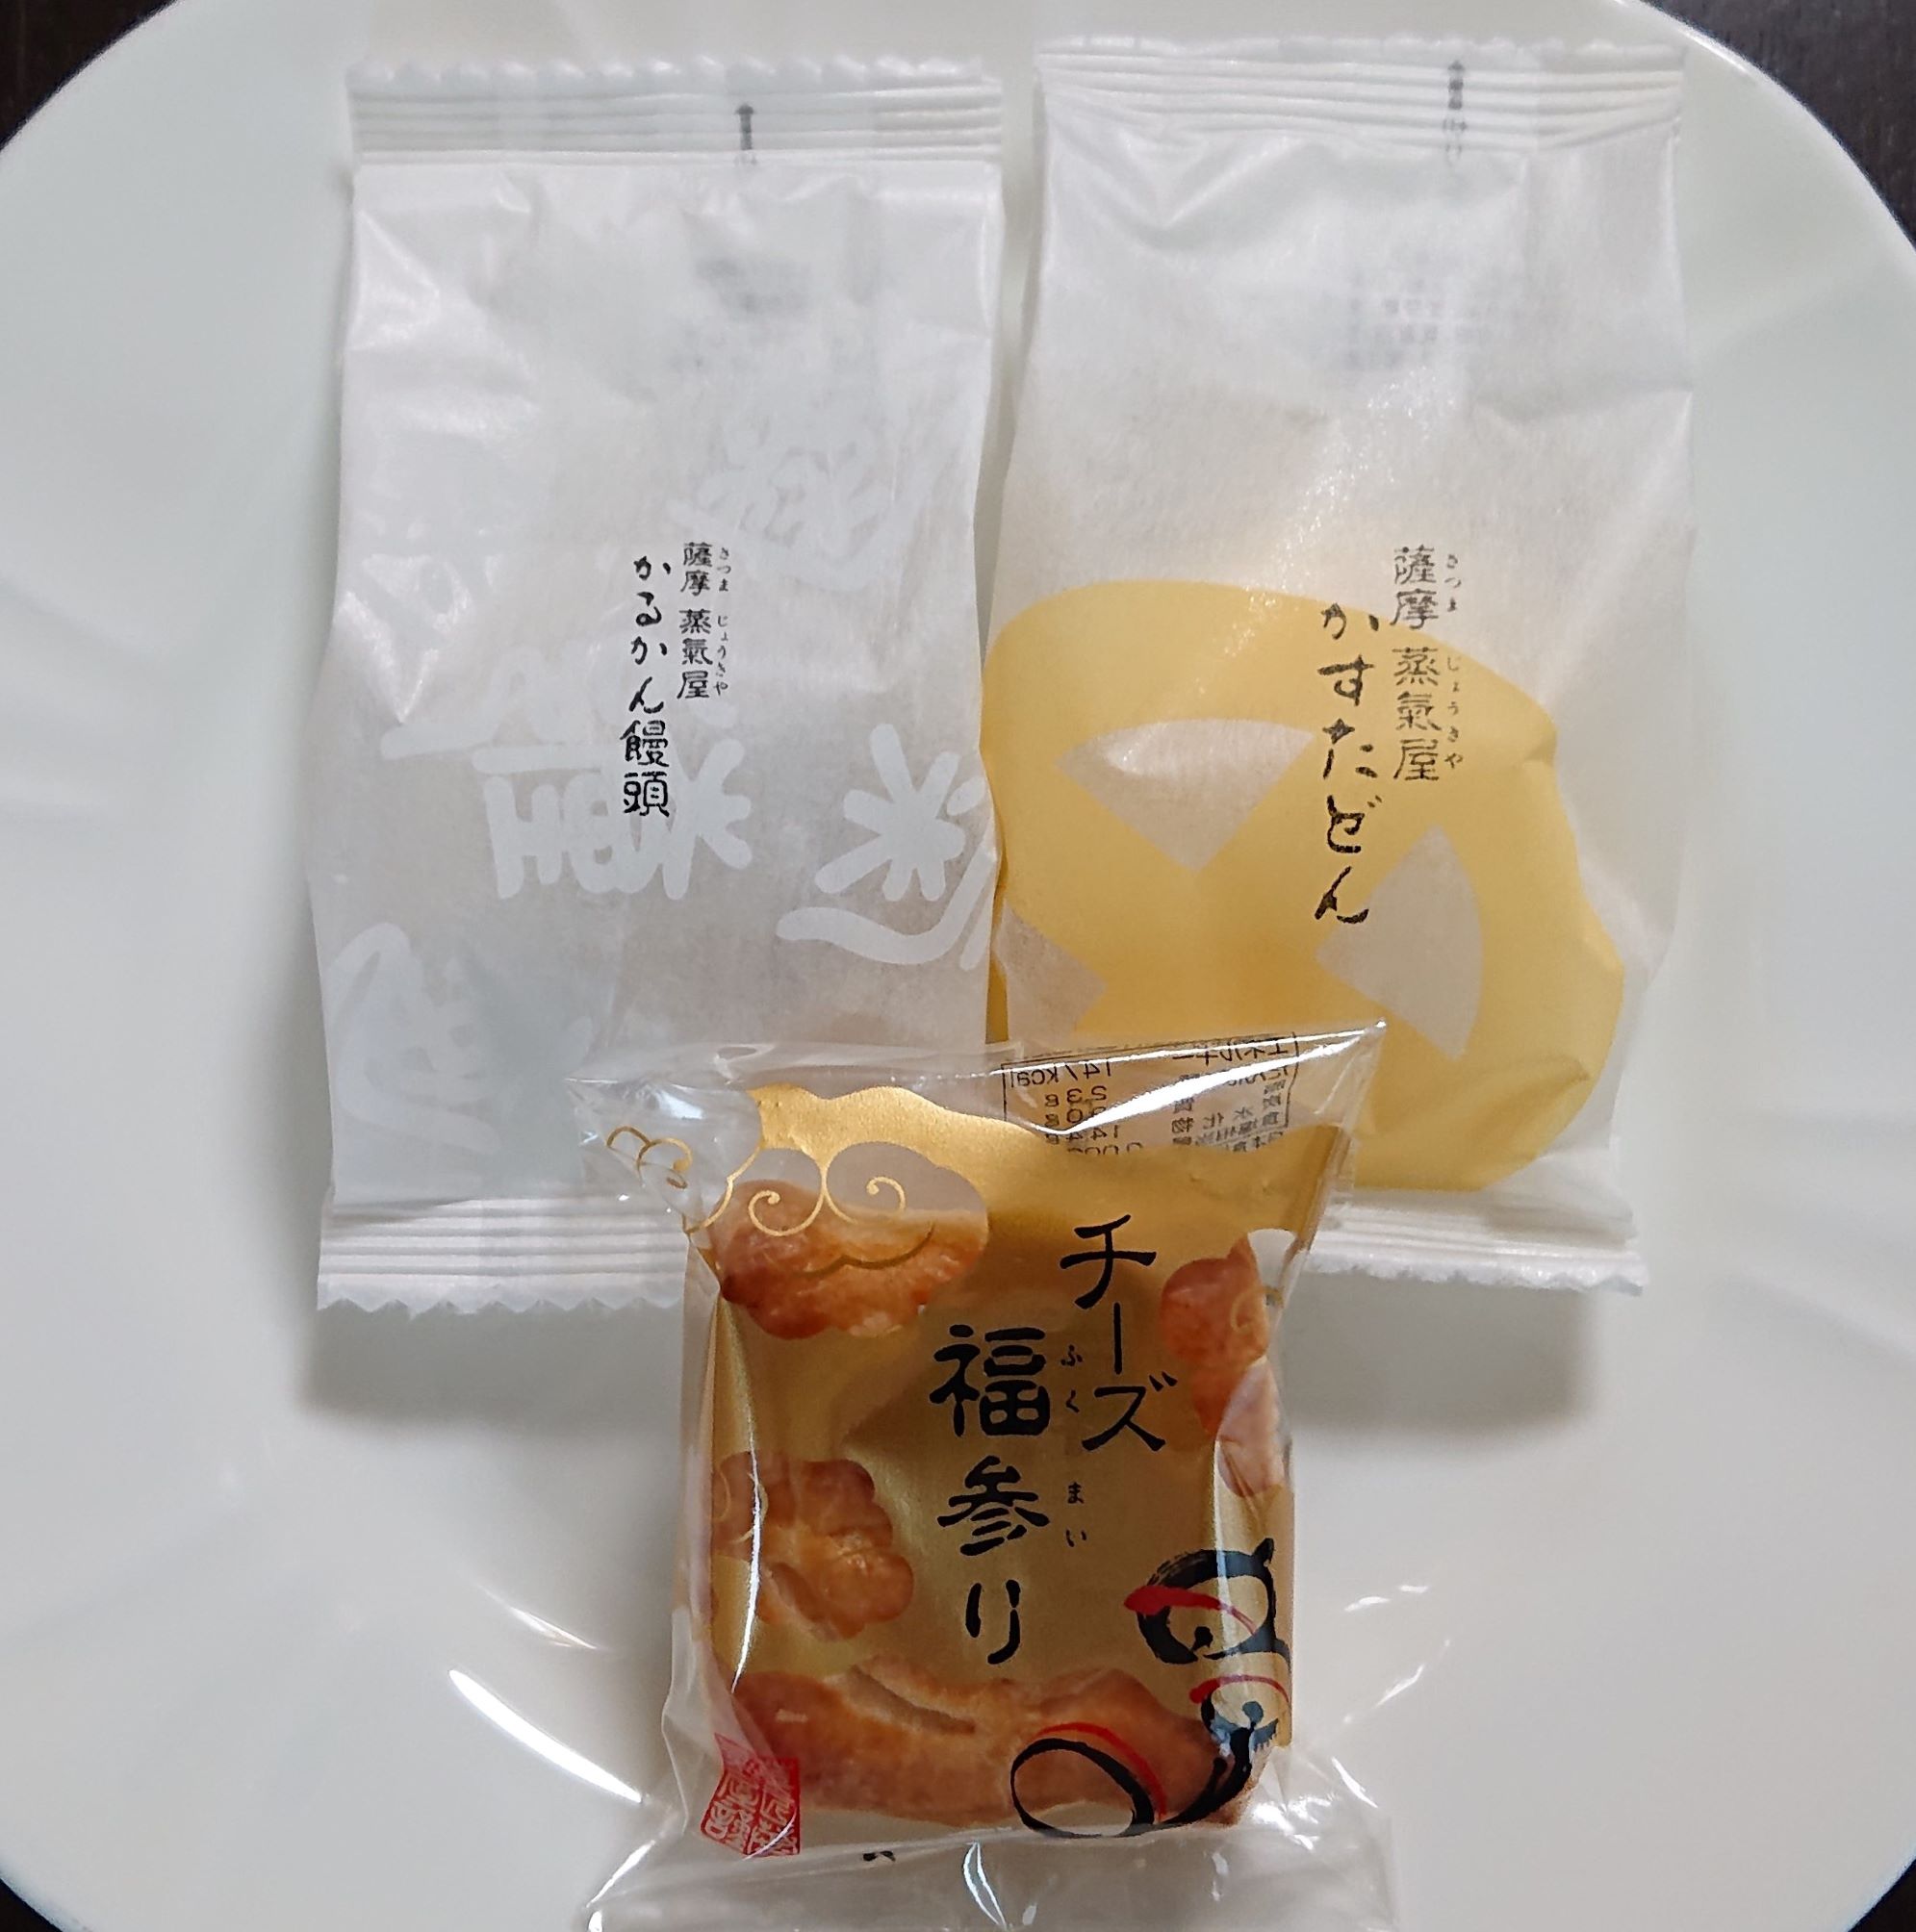 かすたどん / かるかん饅頭（薩摩 蒸氣屋） Kasutadon, Karukan Manju – ご褒美プチ贅沢クラブ